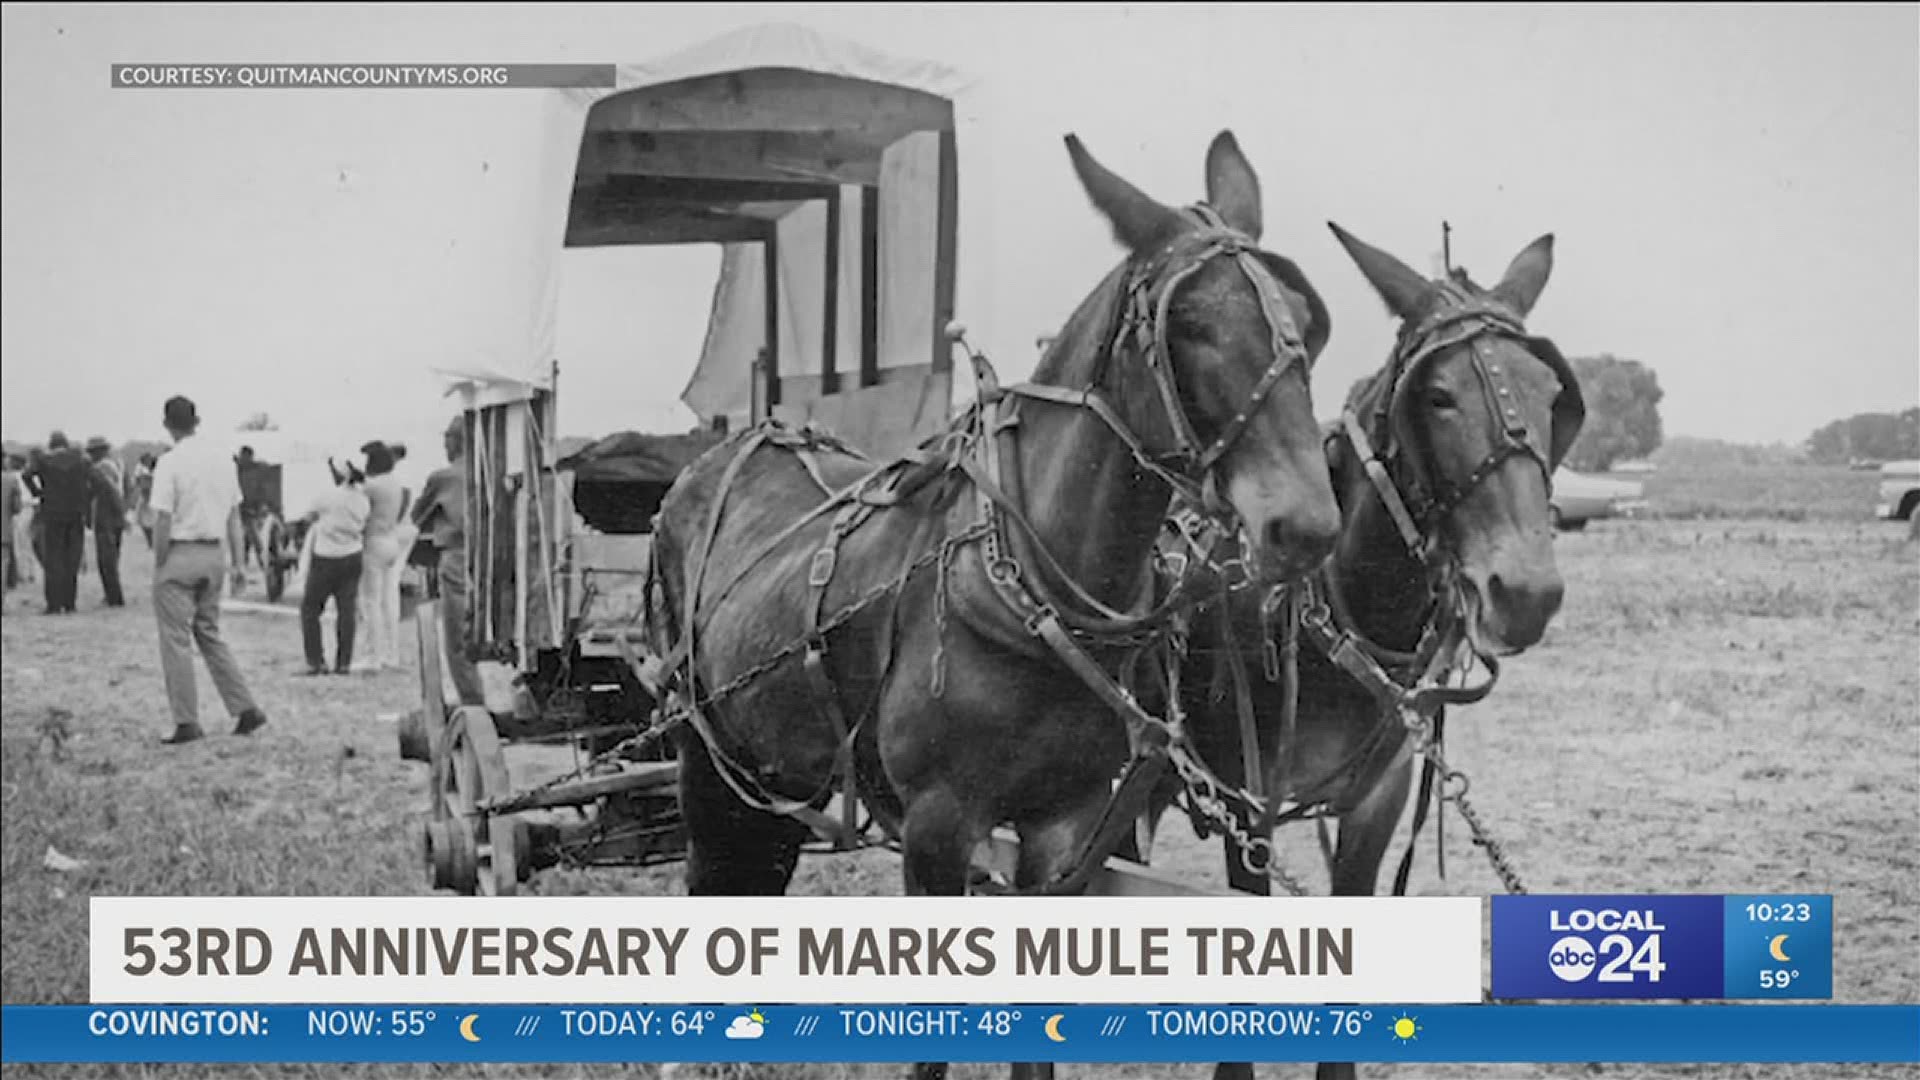 Mule Train began 53 years ago.